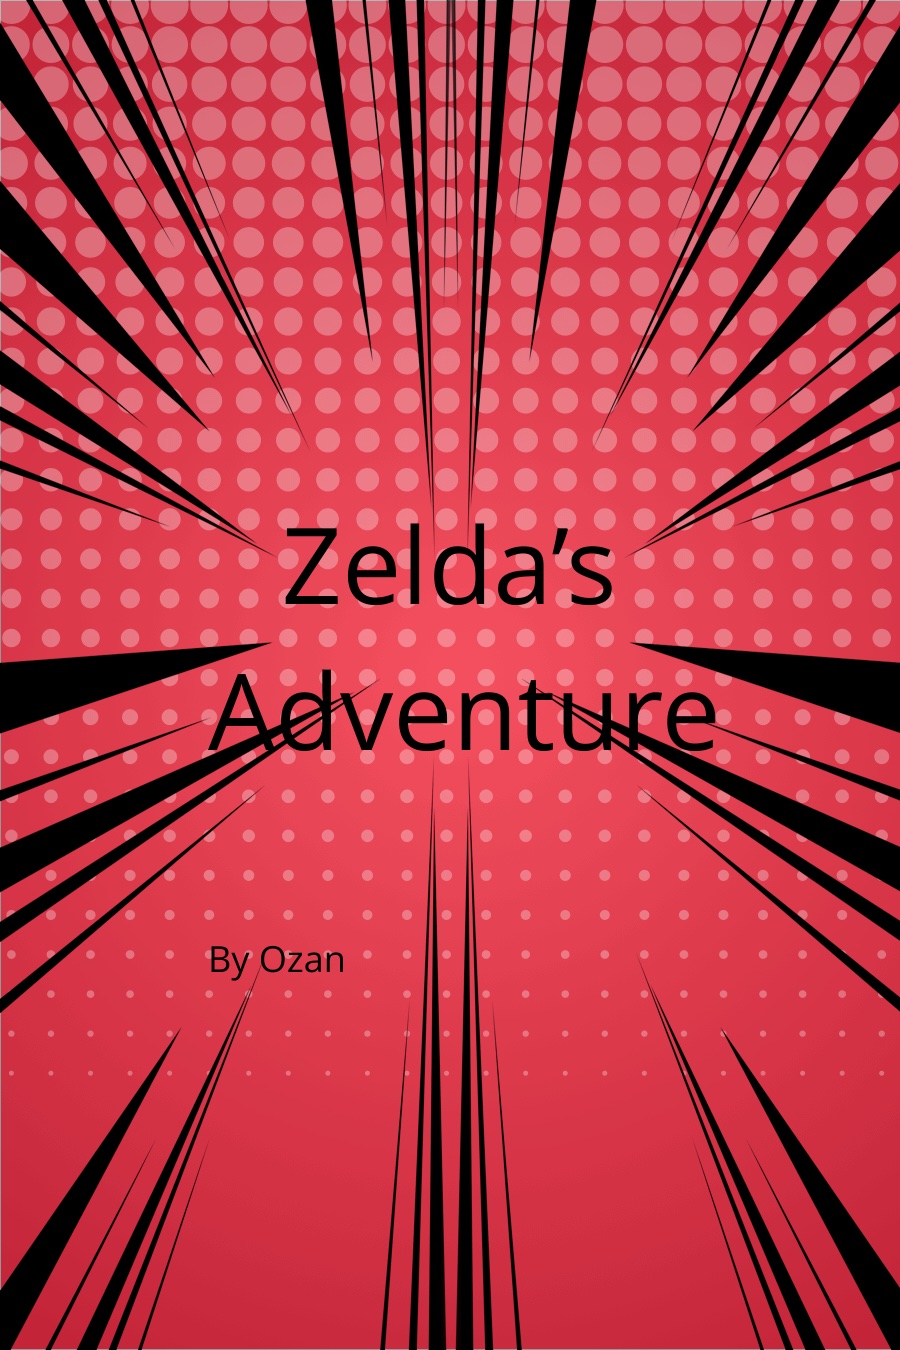 Zeldas Adventure by Ozan E